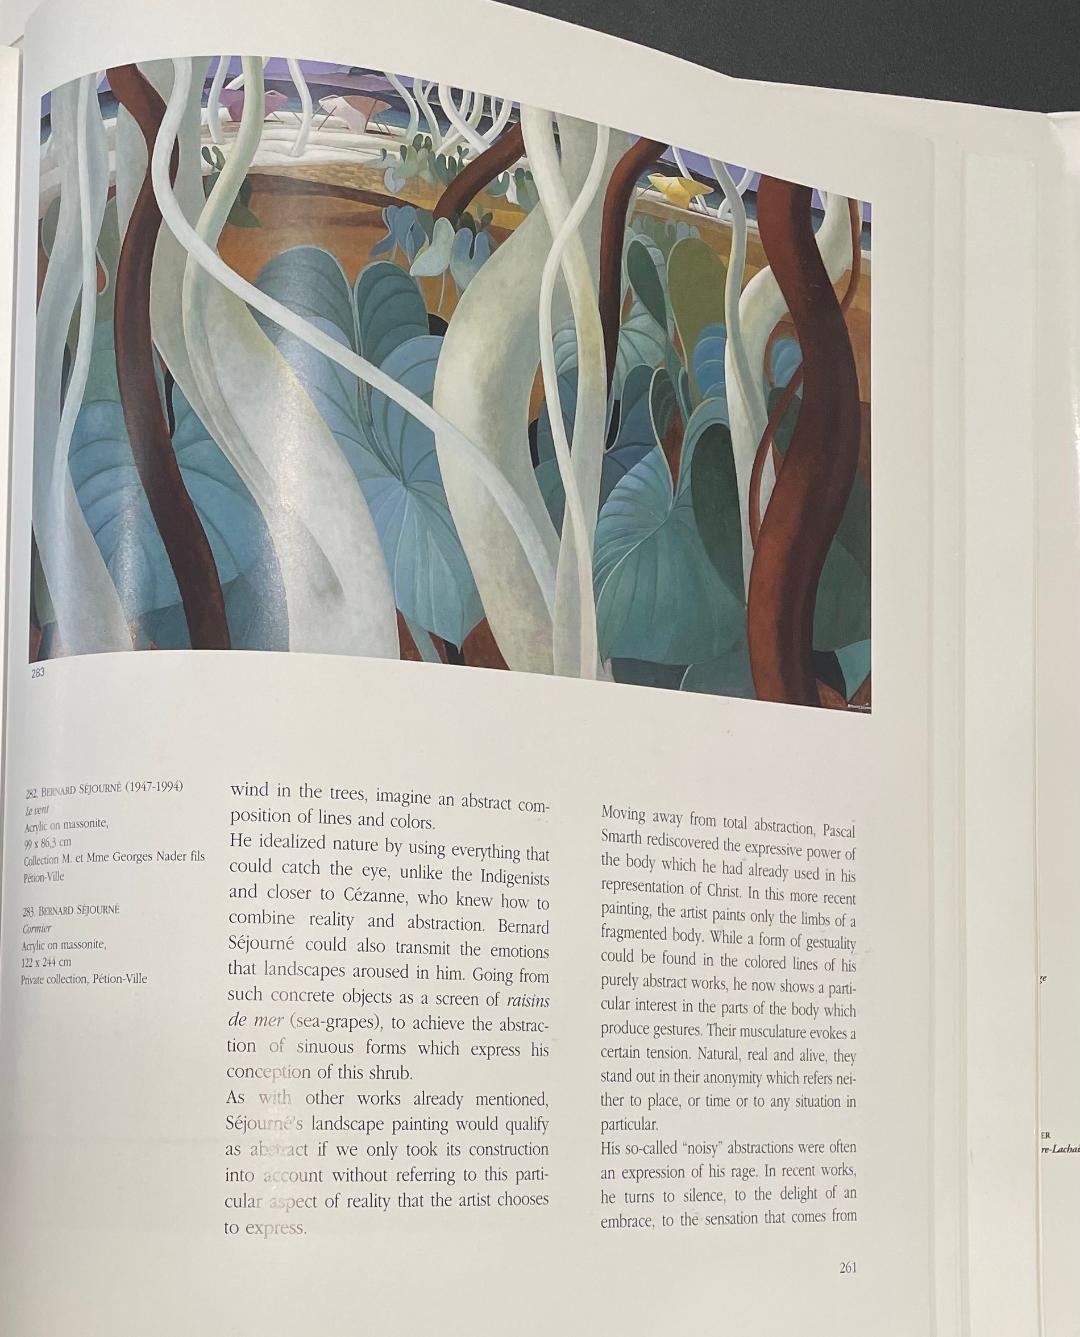 Bernard Sejourne (1947-1994) 48"x60" Vert Par Cormier Beach 1984 Acrylique sur Masonite Peinture #2409GN-HA-Publié dans "Peintres Haitiens", pp261